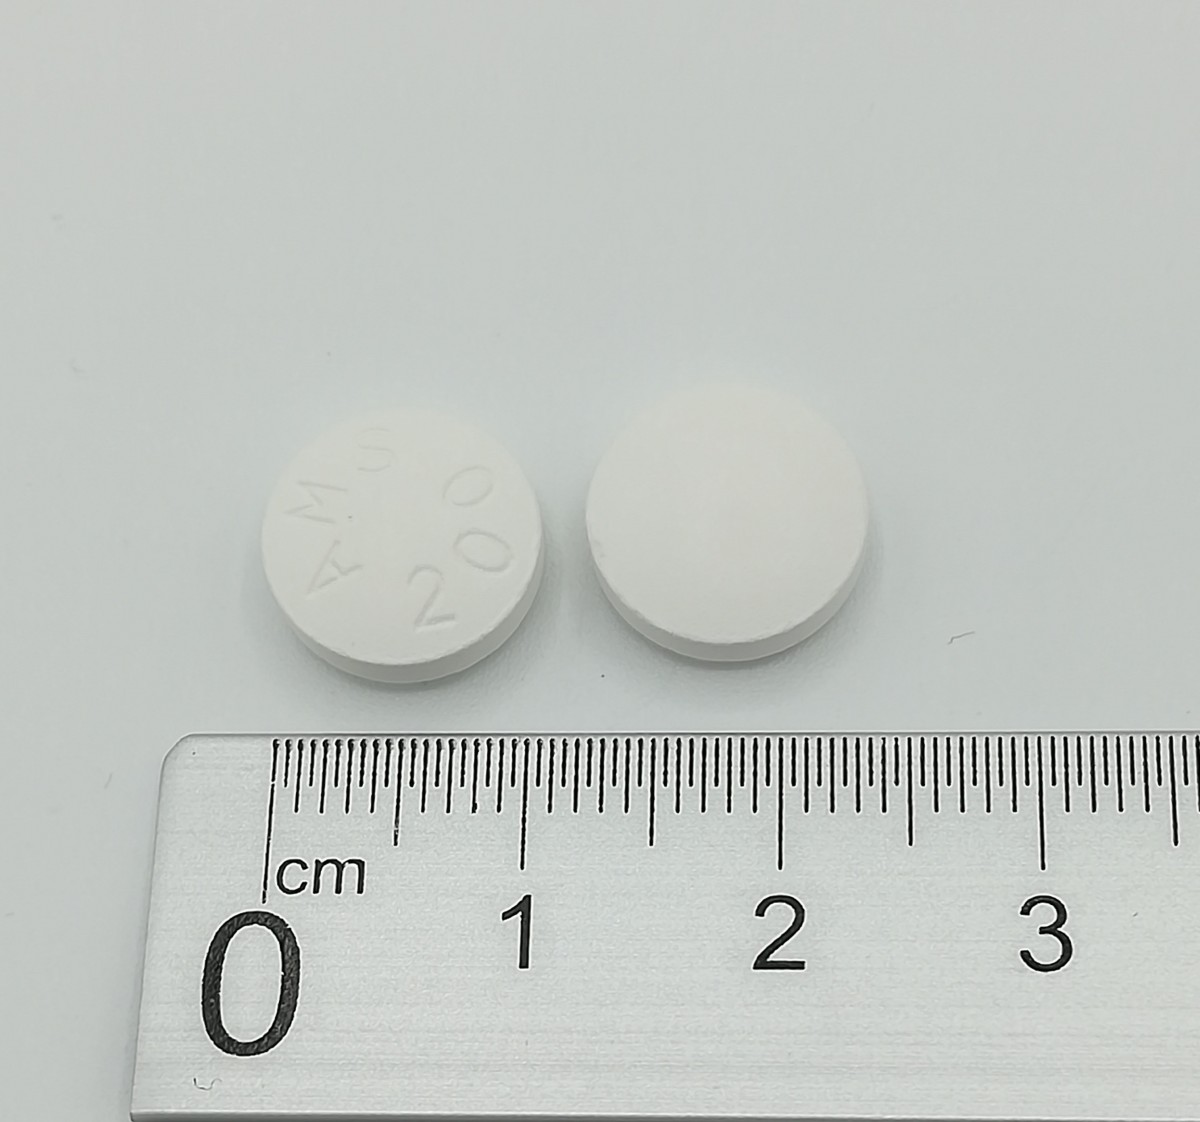 AMISULPRIDA NORMON 200 mg COMPRIMIDOS RECUBIERTOS CON PELICULA EFG, 60 comprimidos fotografía de la forma farmacéutica.